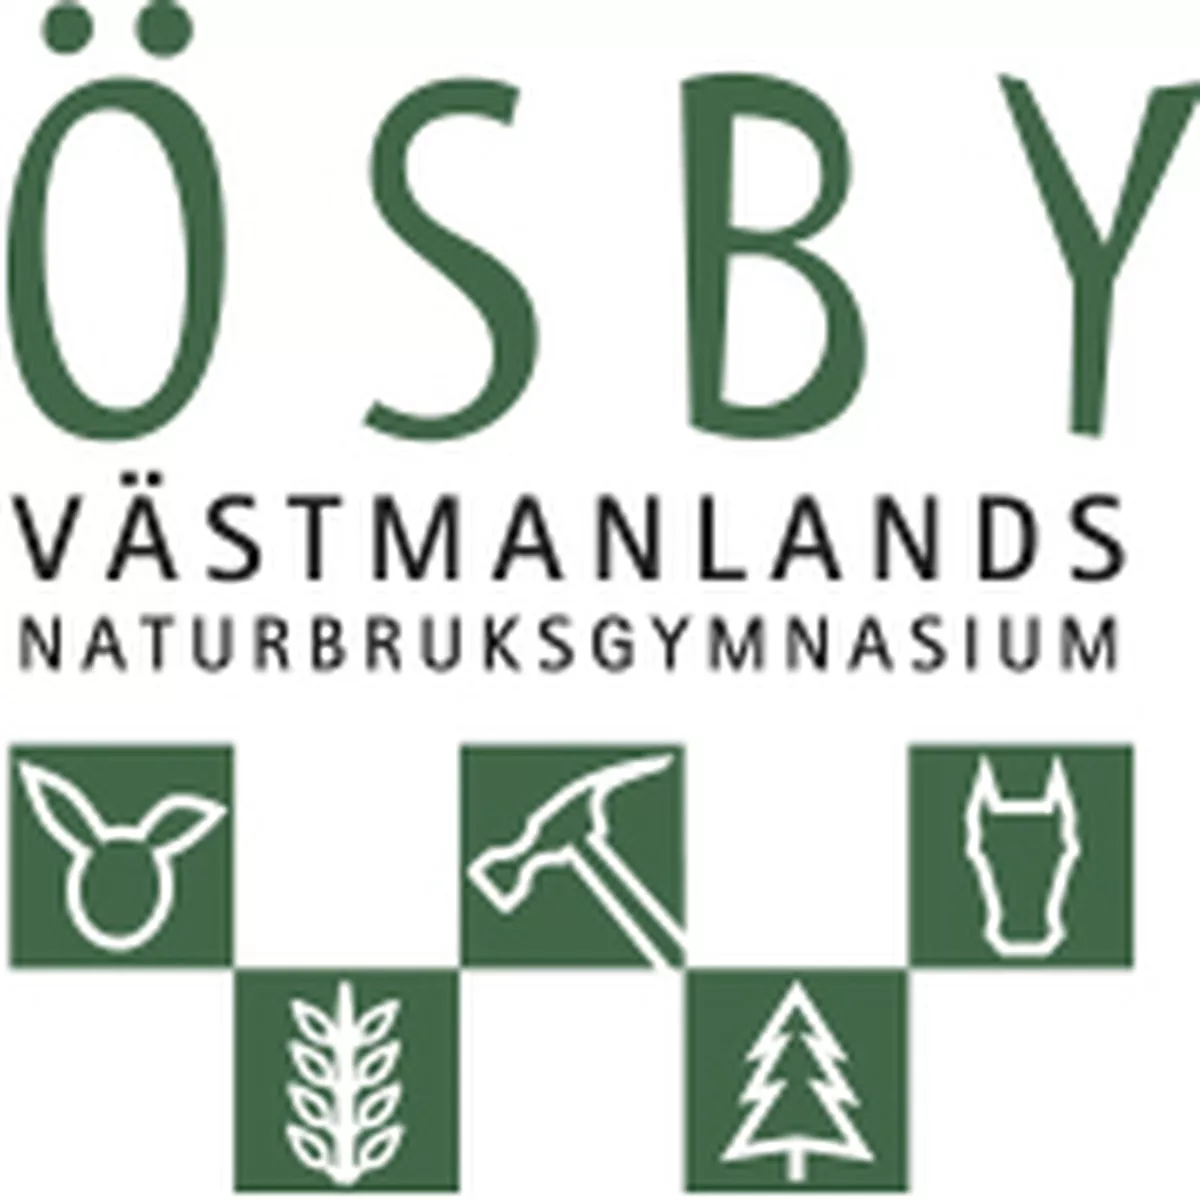 Ösby Västmanlands Naturbruksgymnasium